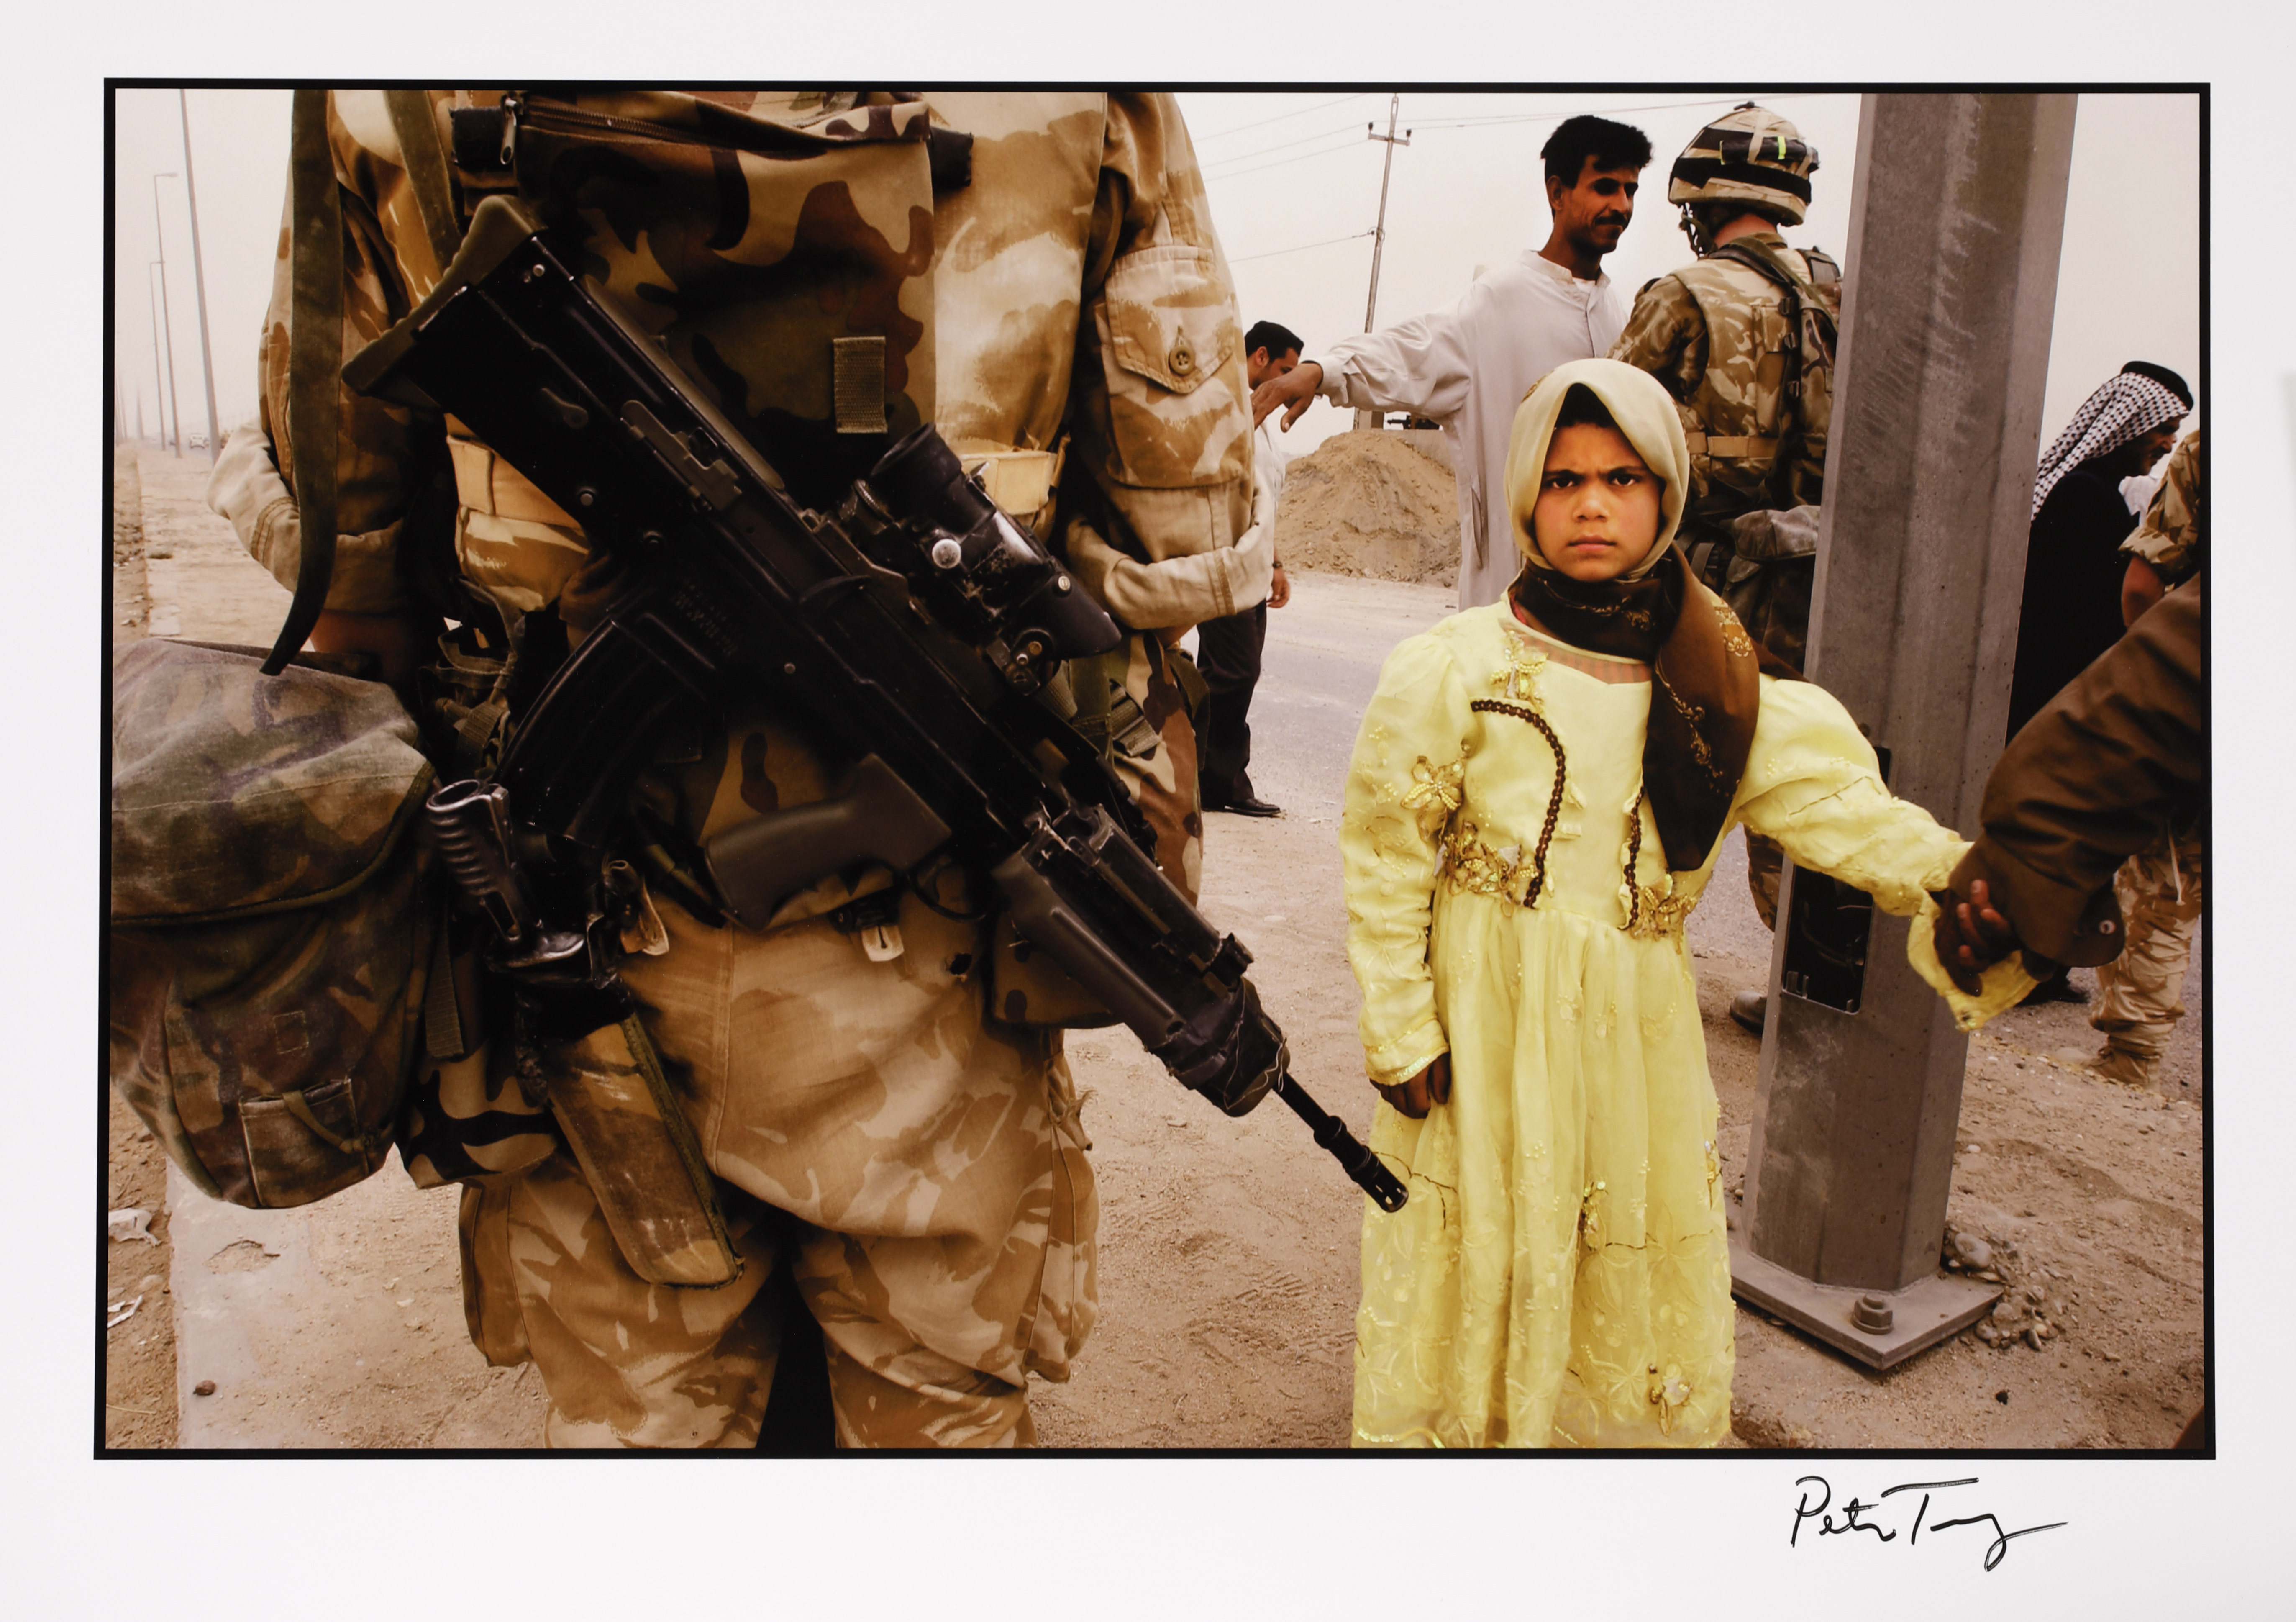 Peter Turnley. The War in Iraq, Near Basra, Iraq, 2003. Archival pigment print.